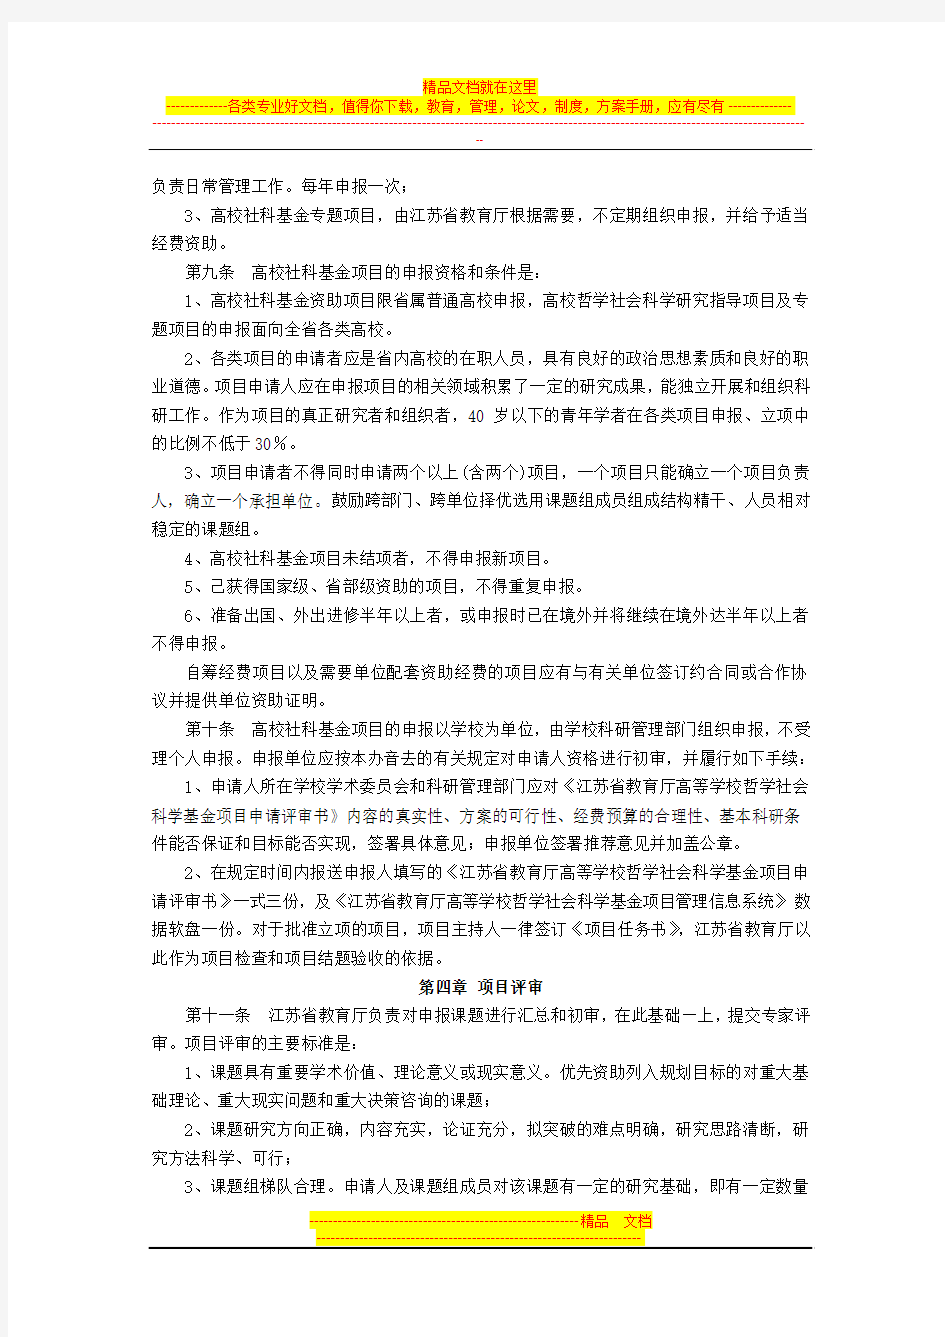 江苏省普通高等学校哲学社会科学基金项目管理办法(试行)